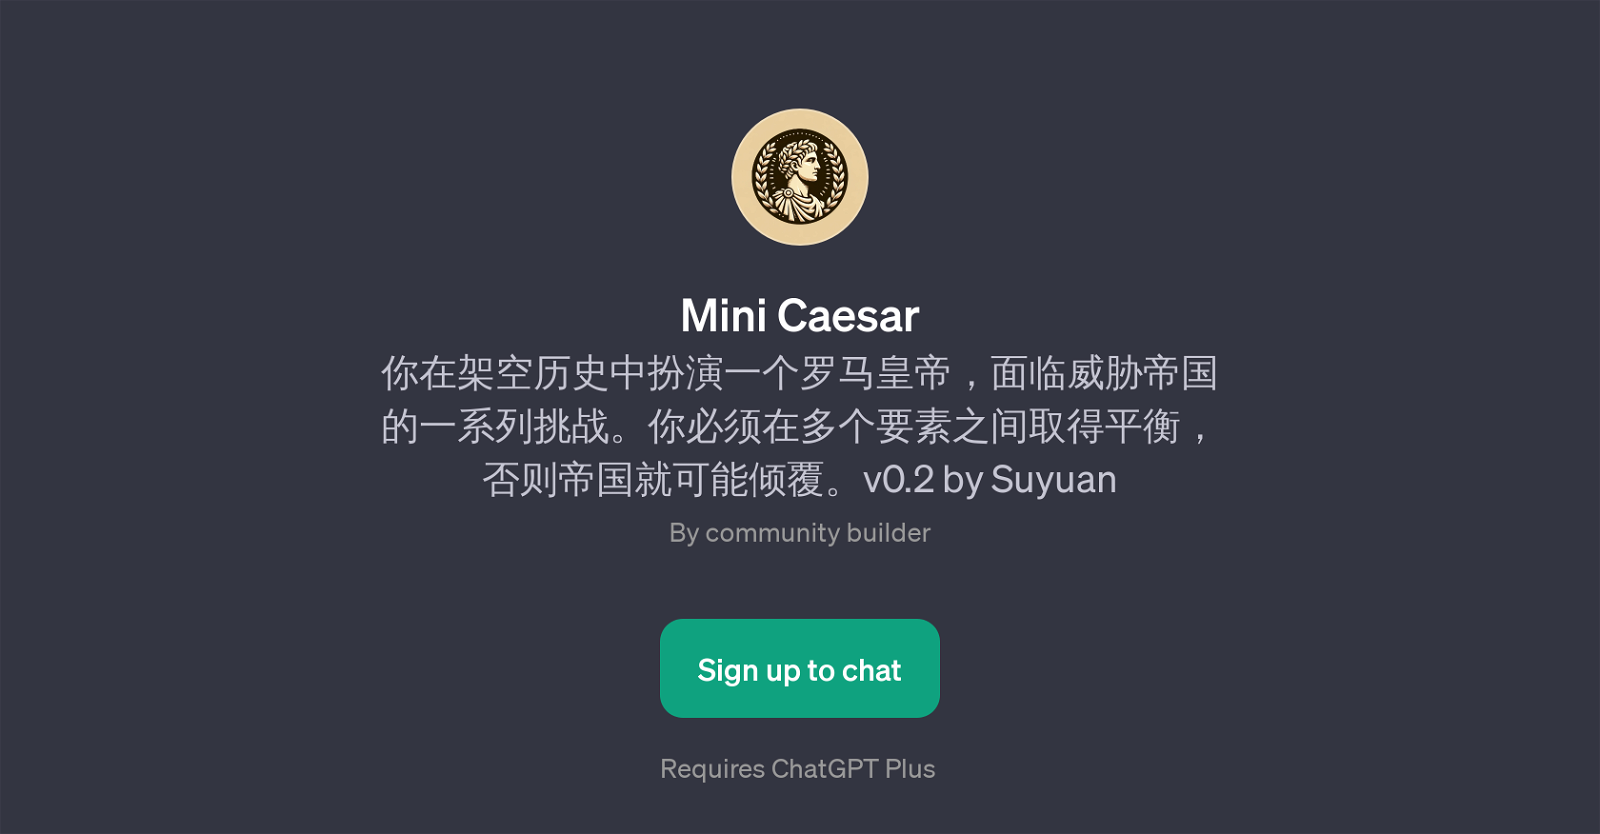 Mini Caesar website